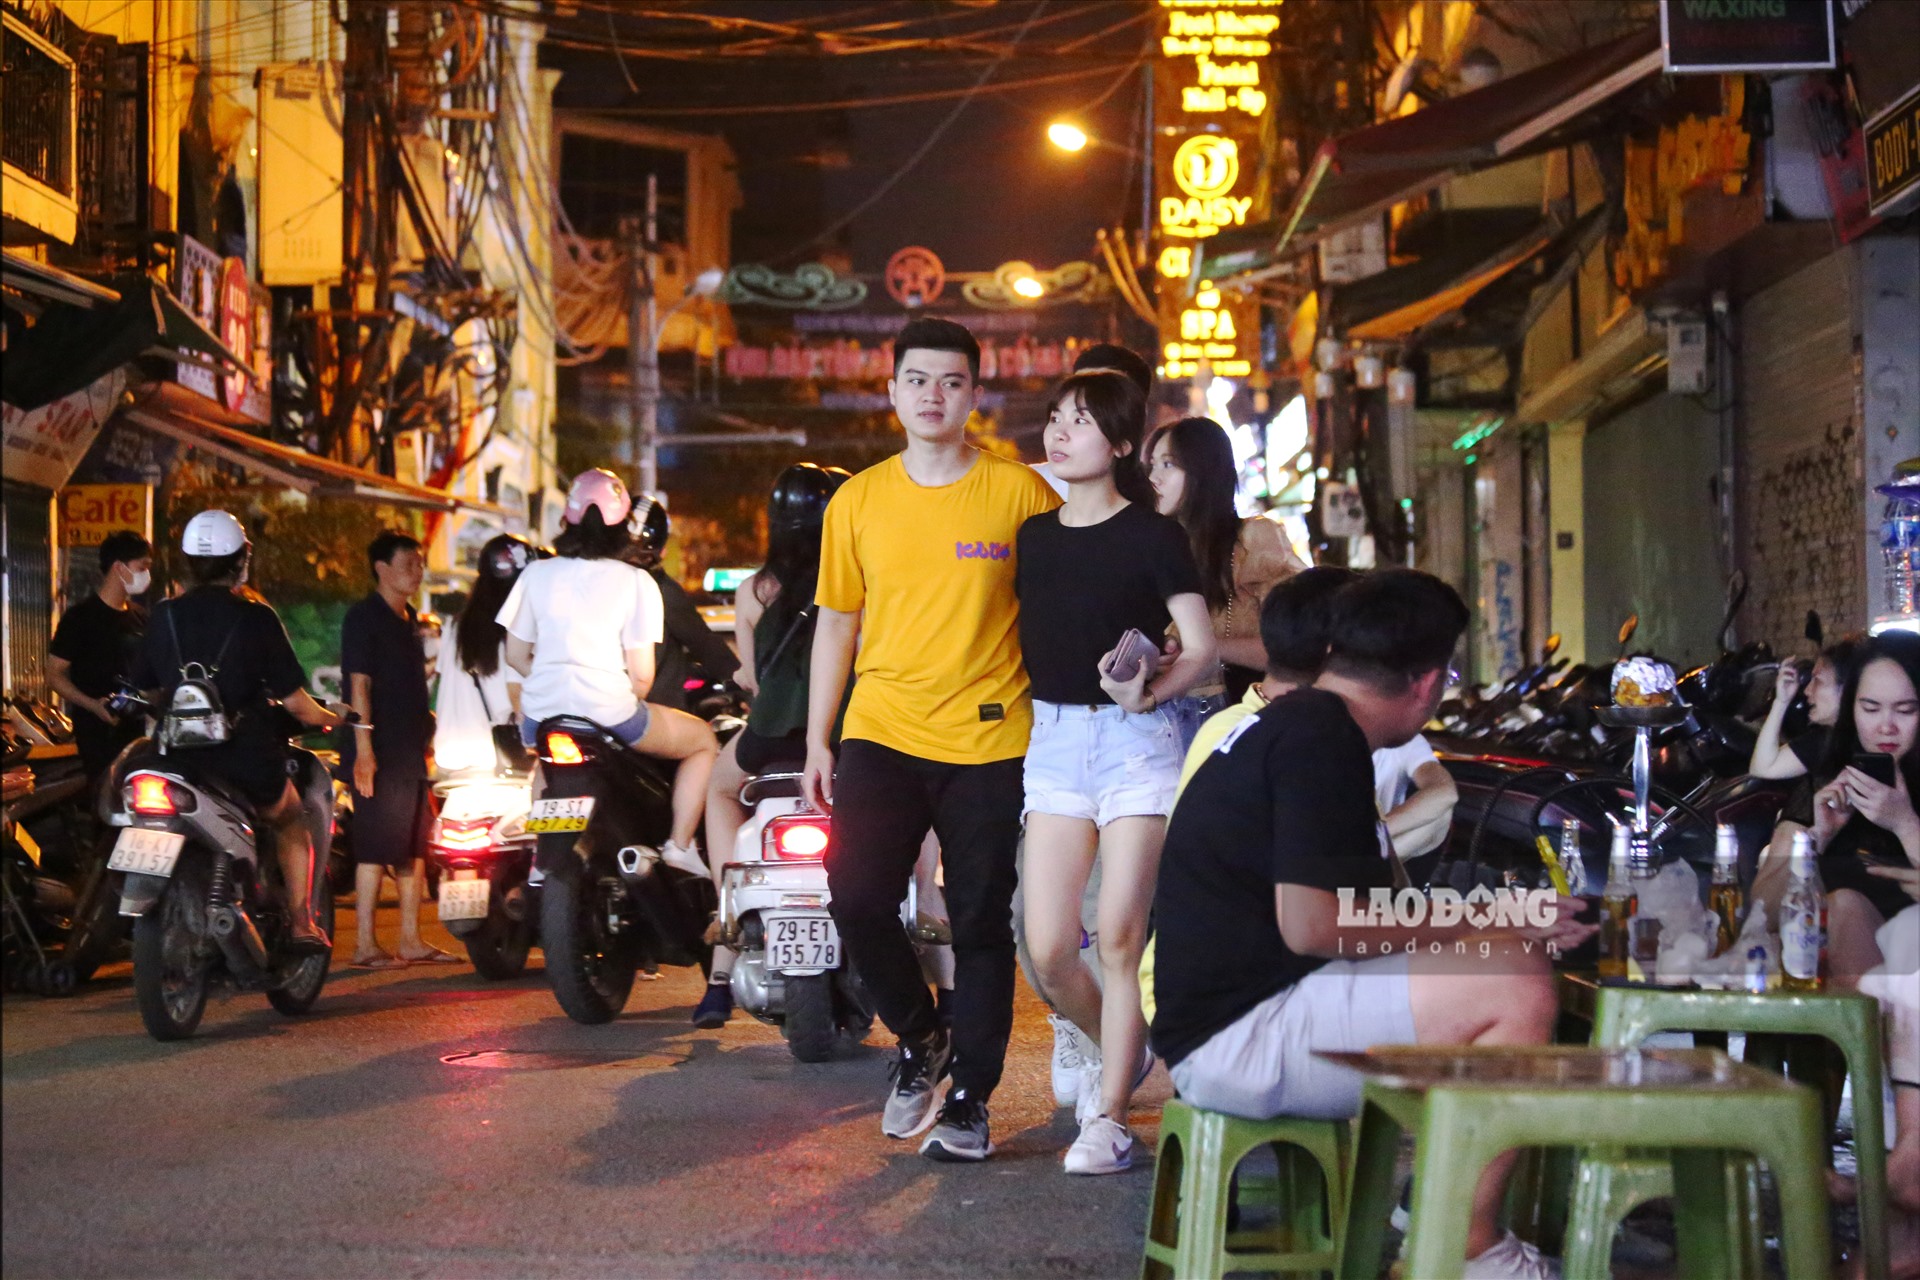 Theo ghi nhận của phóng viên, dù đã là 11h45 đêm nhưng các vị khách vẫn tiếp tục đổ về khu phố tây Tạ Hiện.